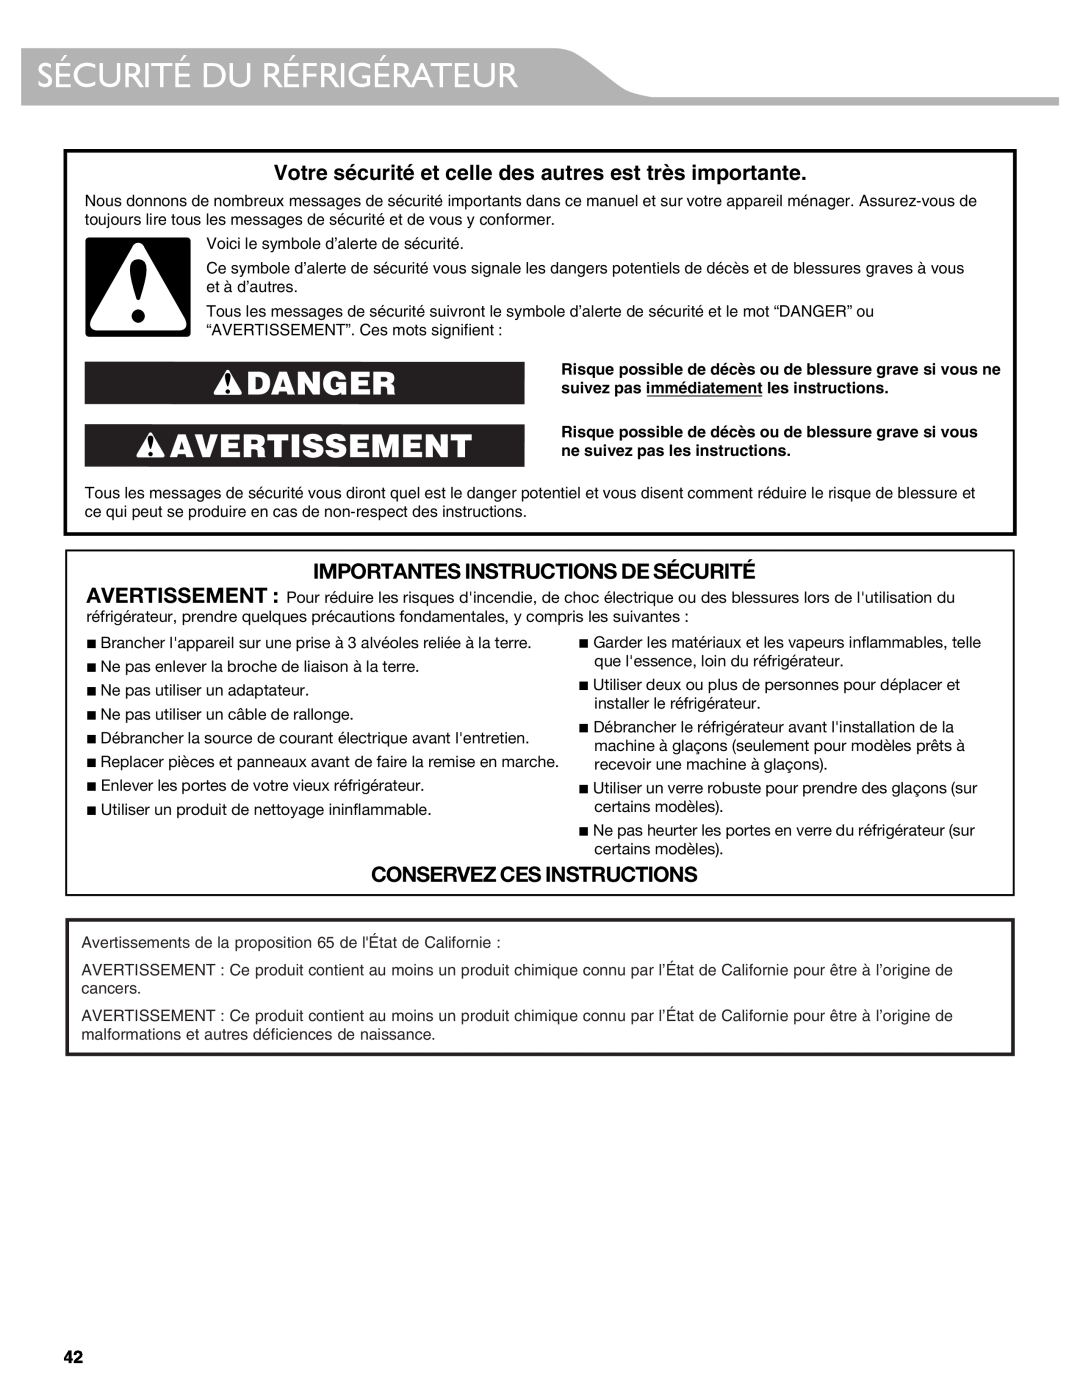 KitchenAid W10417002A manual Sécurité Du Réfrigérateur, Danger Avertissement, Importantes Instructions De Sécurité 